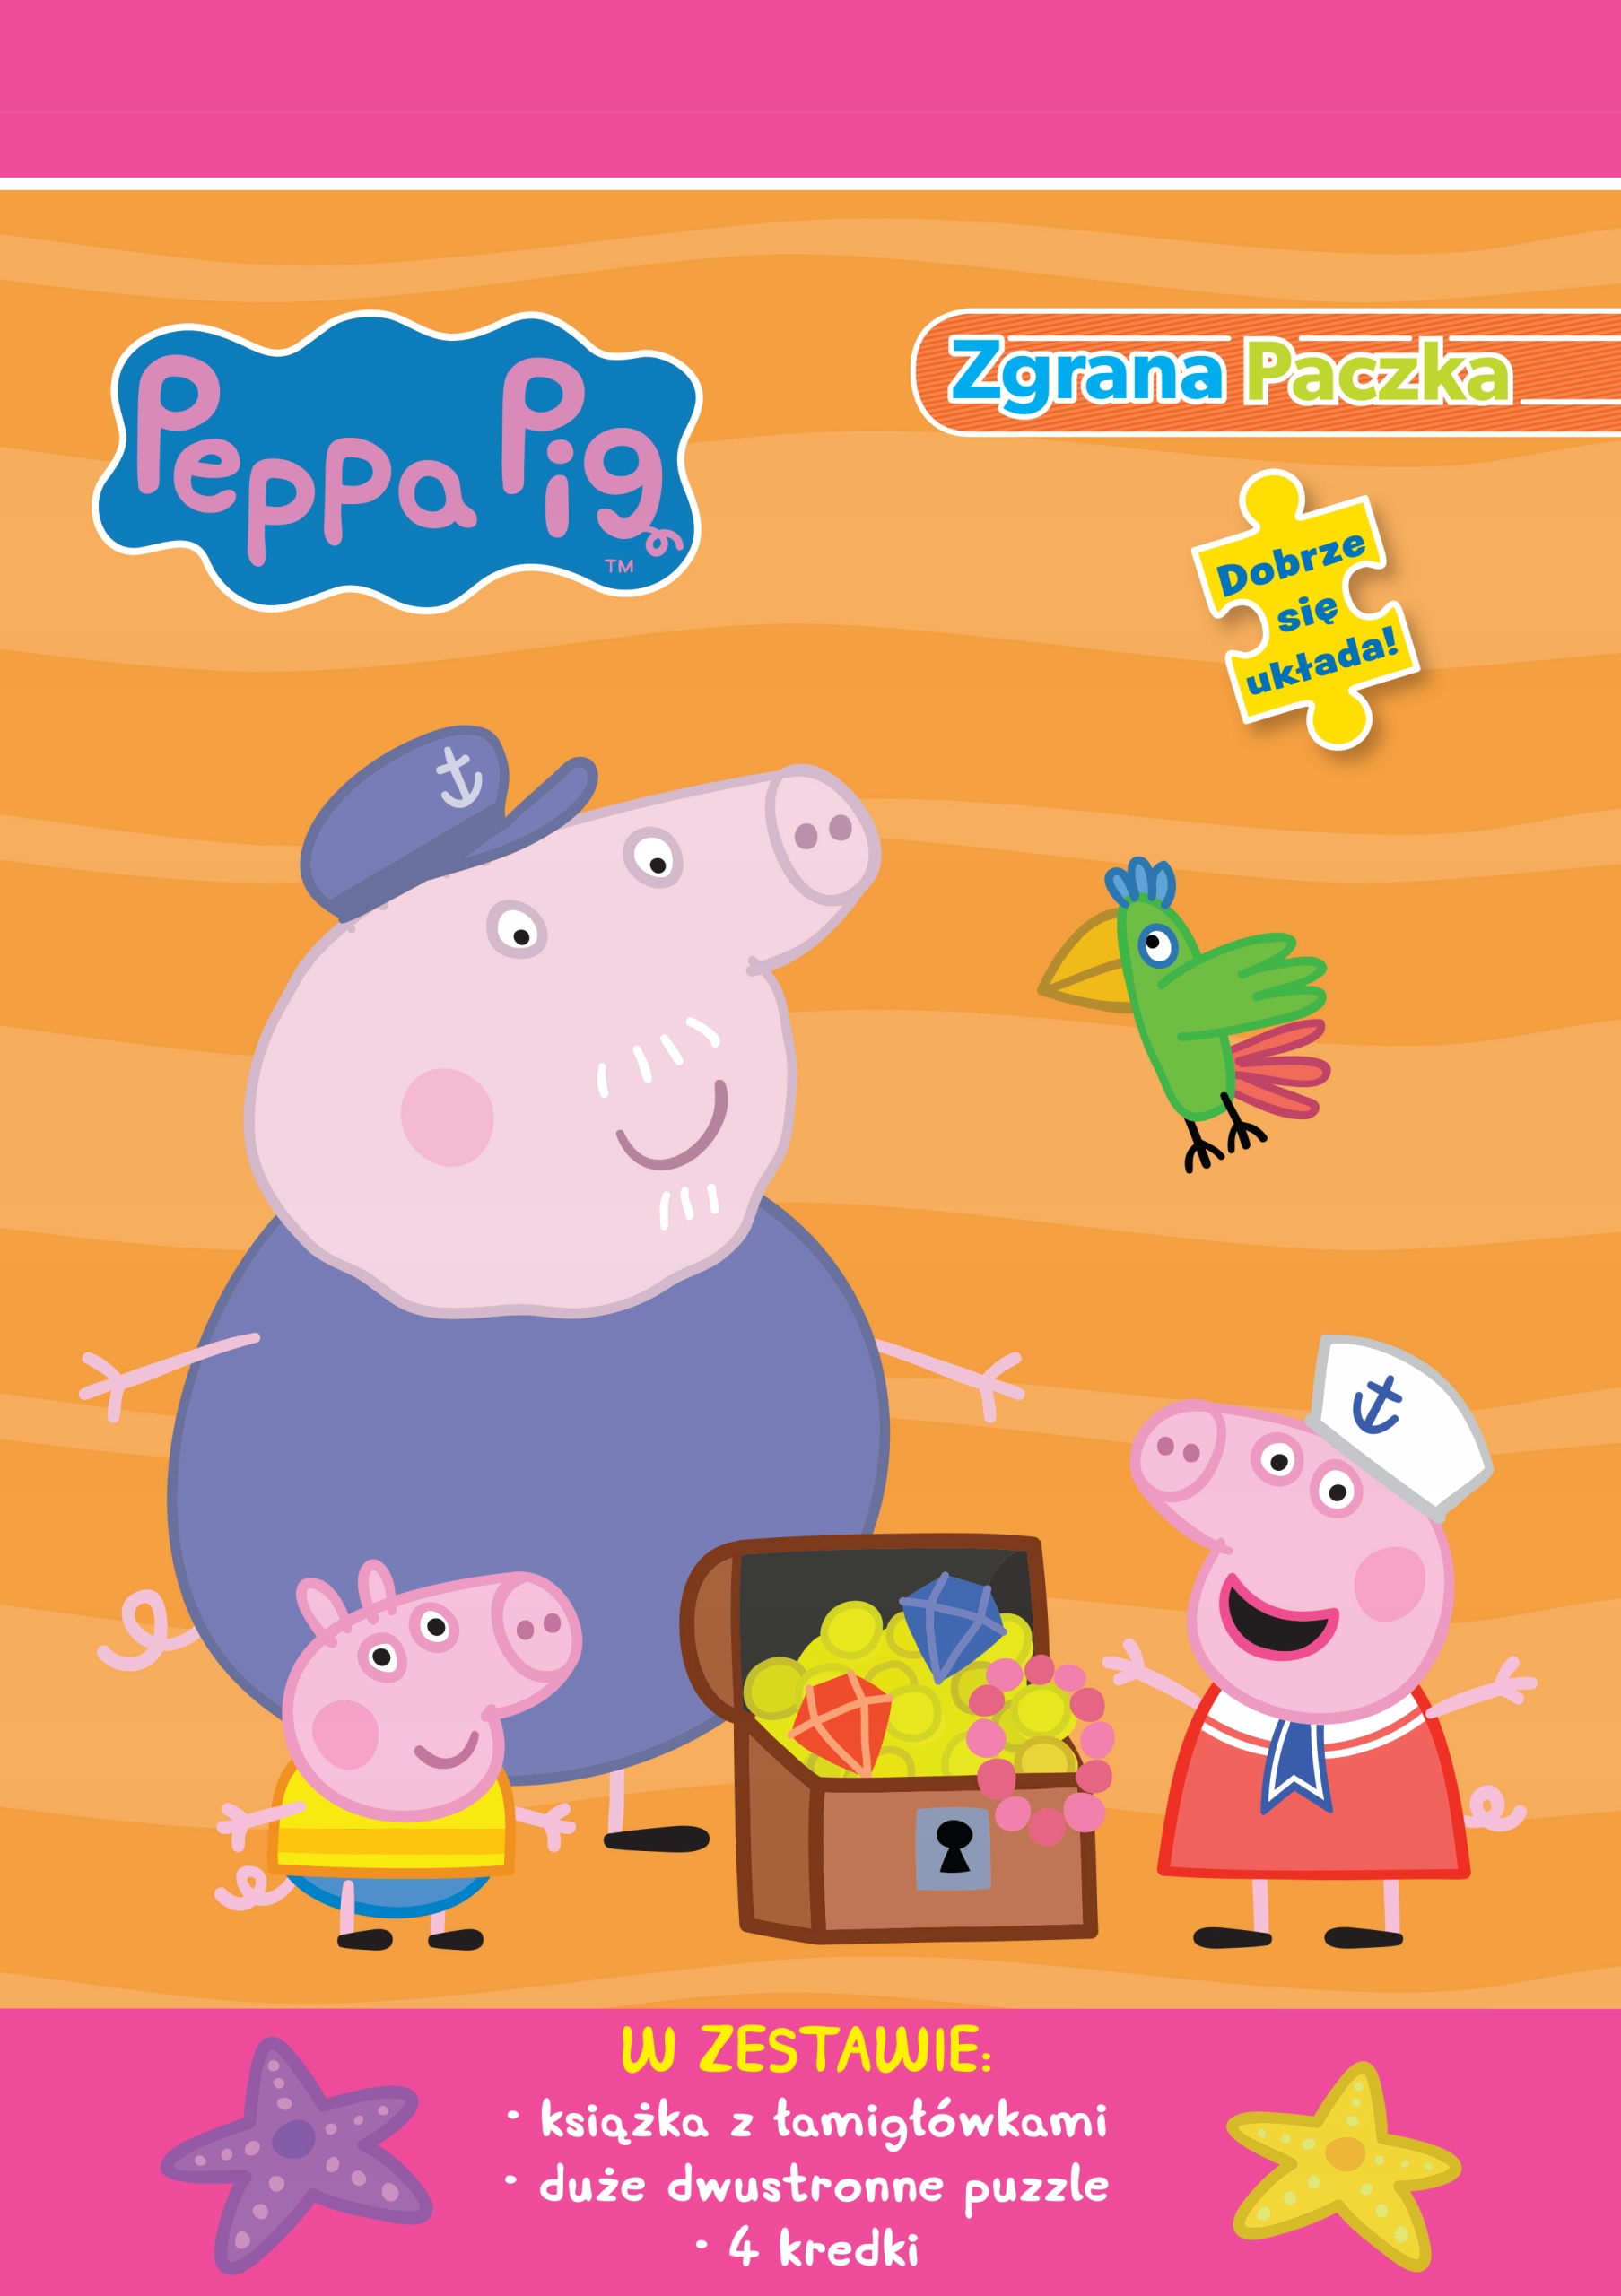 Пепа рассказ. Книжка Пеппы. Сказка про свинку Пеппу. Peppa Pig книга Yoga. Пеппа книга на испанском.